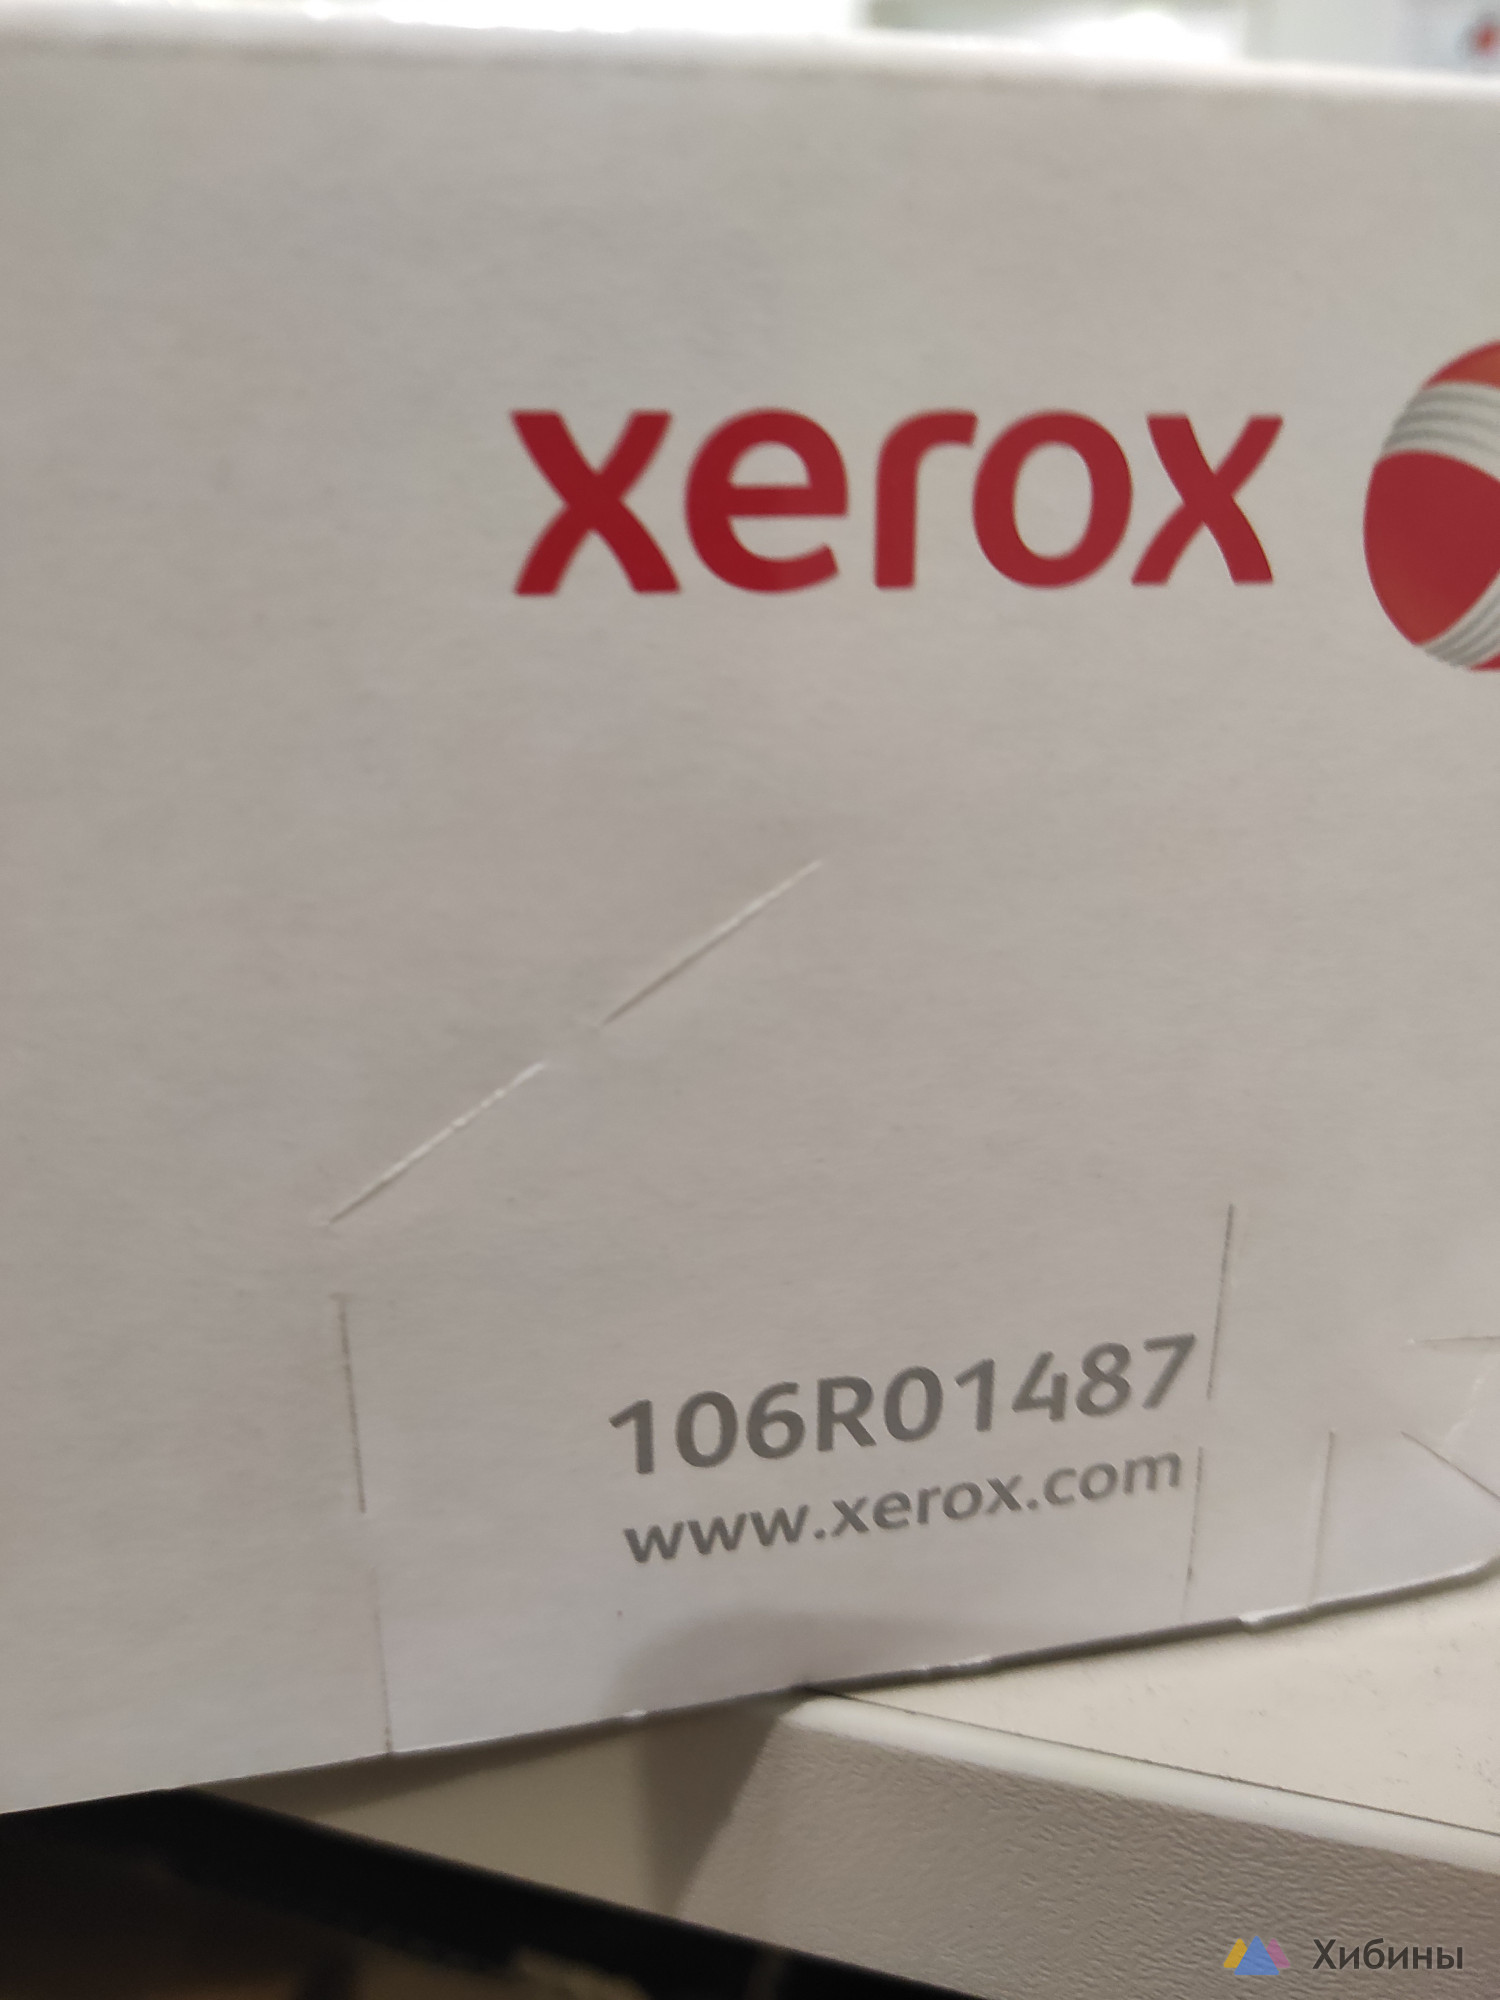 Картридж Xerox